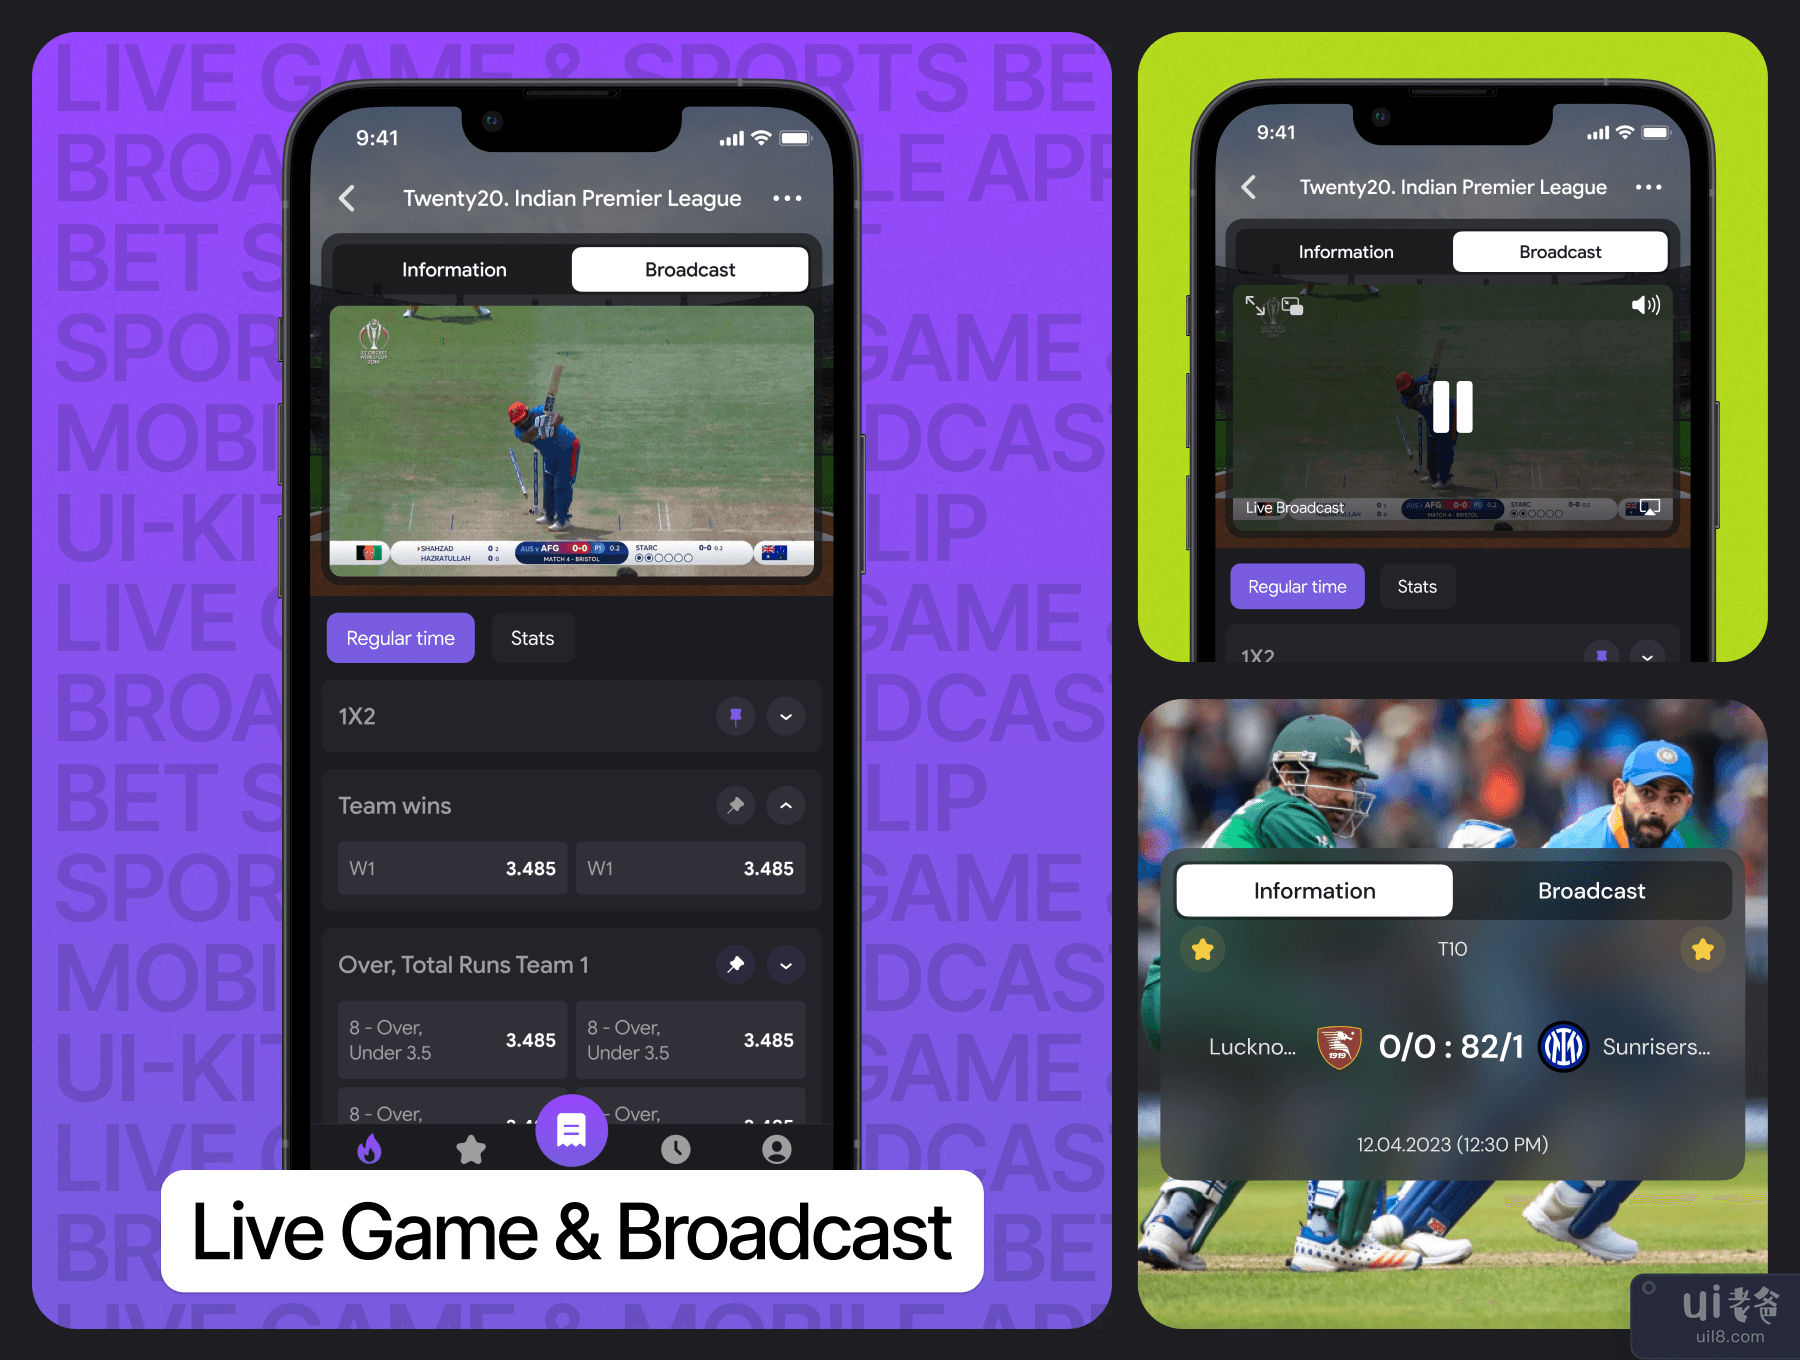 体育投注移动应用程序 UI 工具包 (Sports bet mobile app UI Kit)插图6